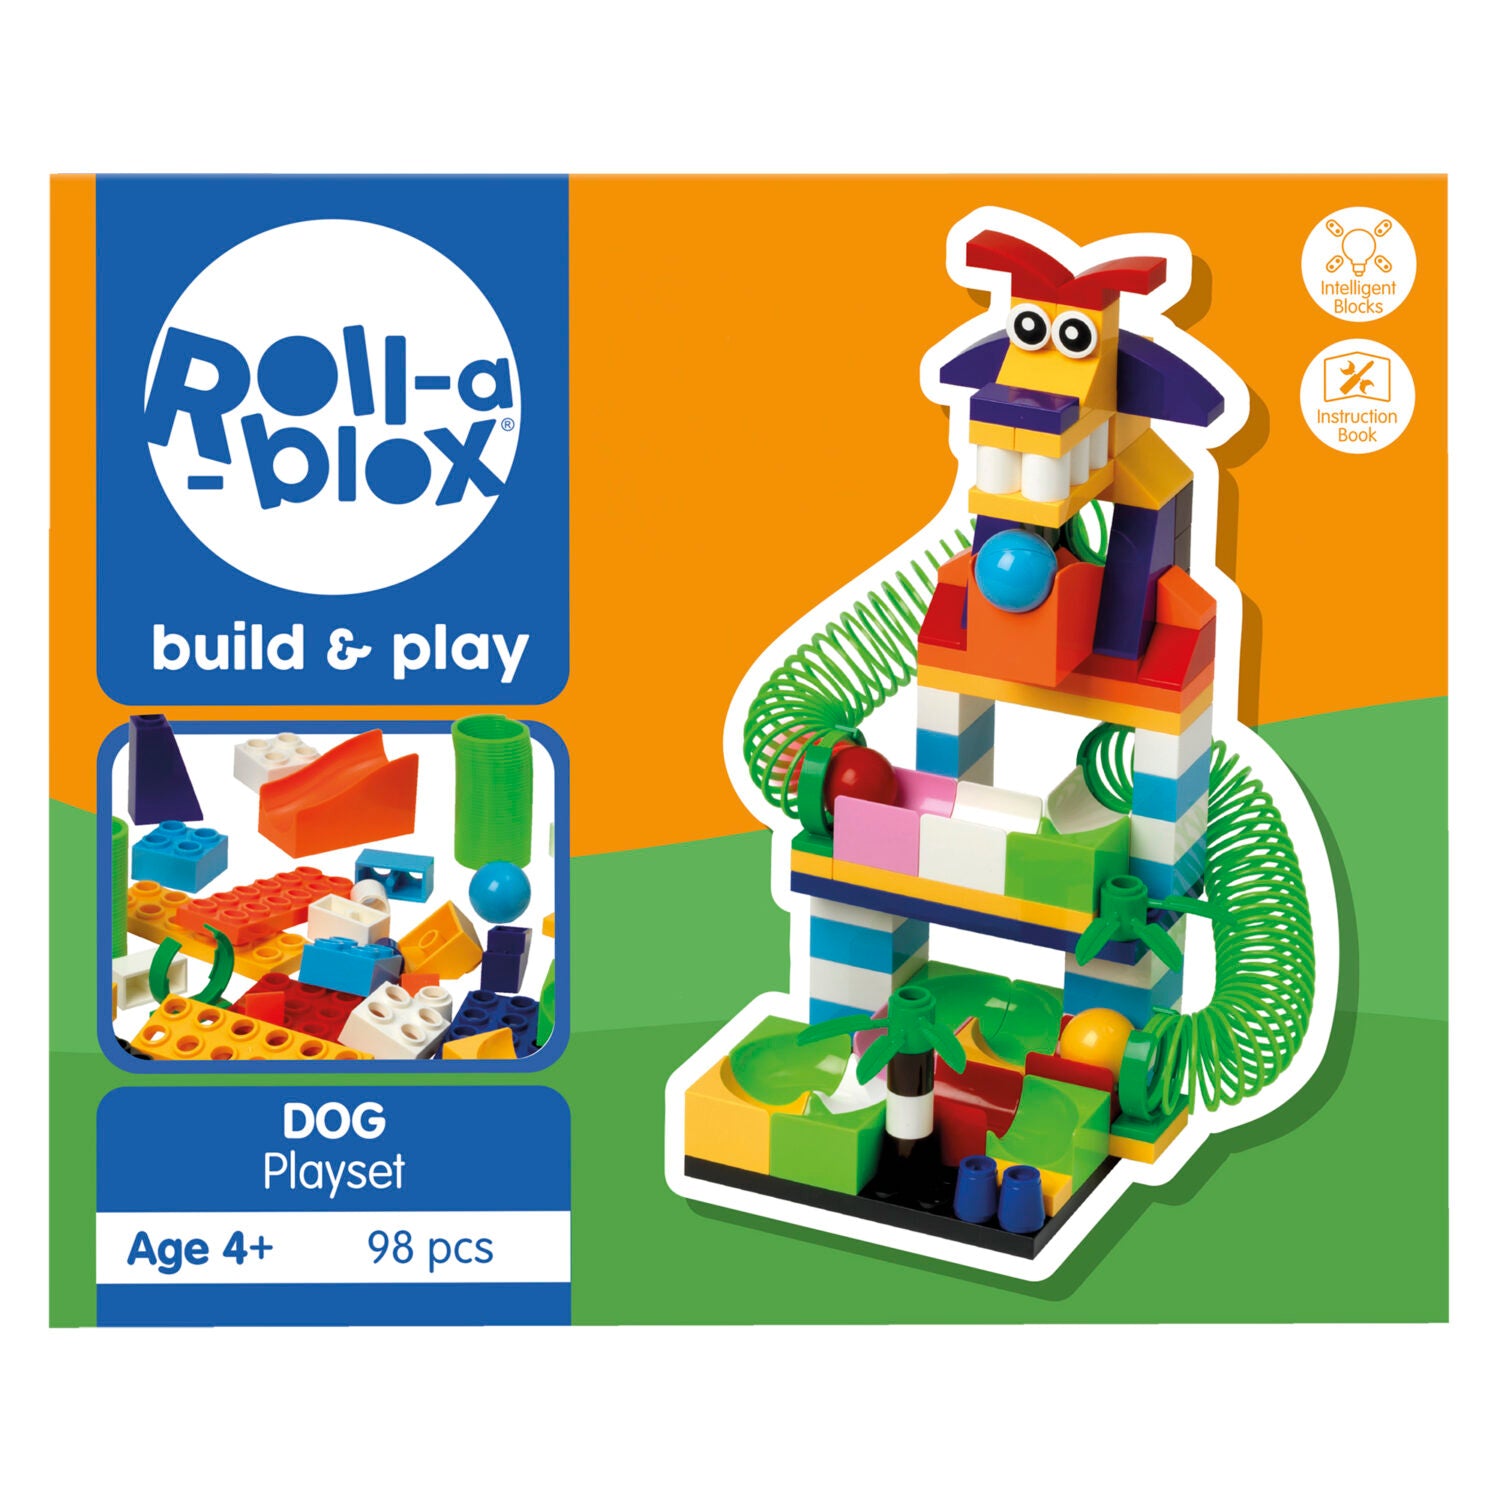 PETERKIN ROLL-A-BLOX DOG PLAYSET 98PC